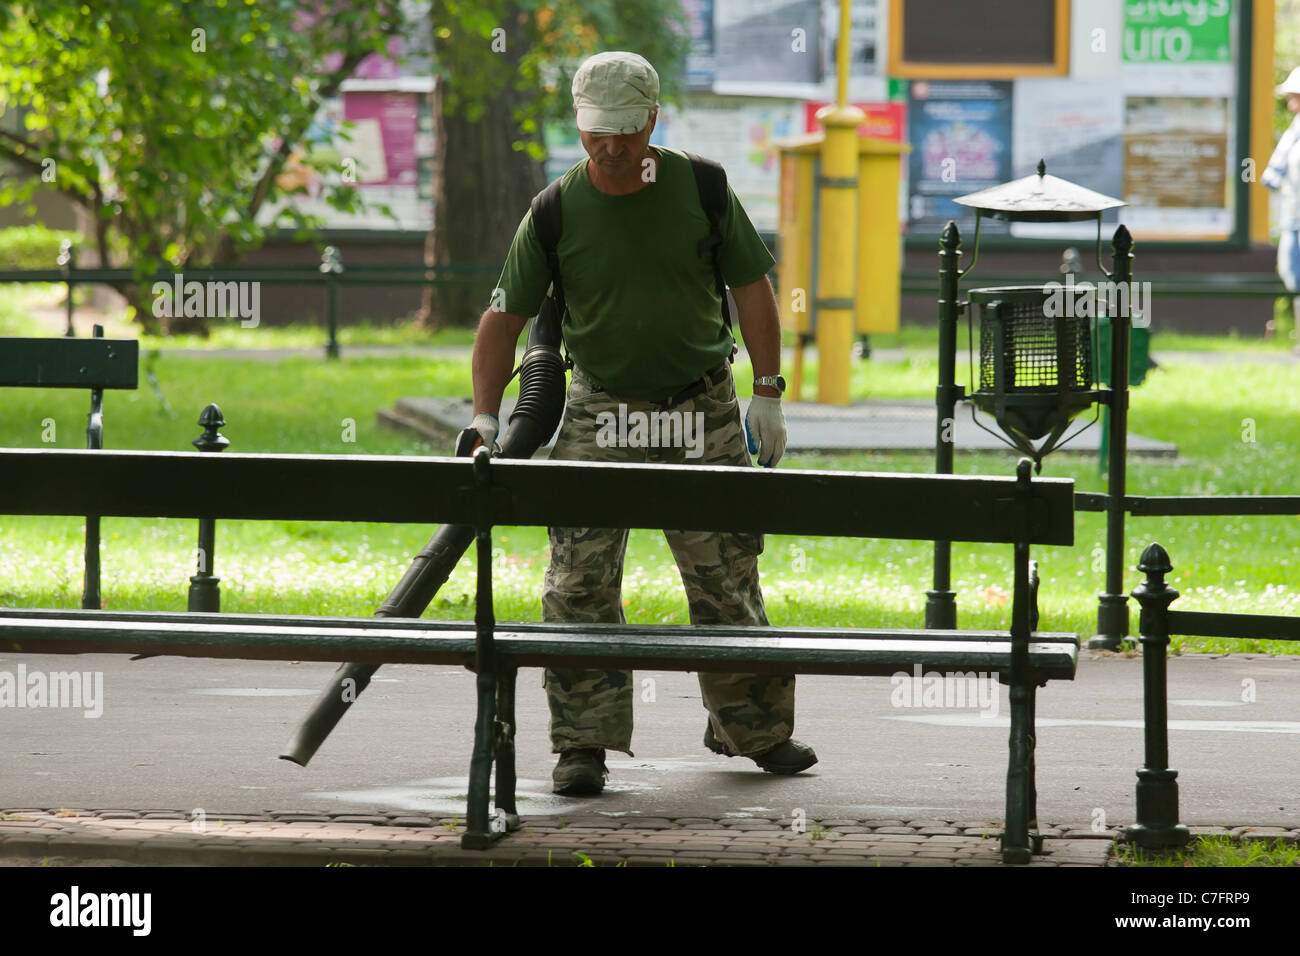 Ouvrier d'entretien nettoyage d'une allée du parc à l'aide d'un ventilateur. Cracovie, Pologne. Banque D'Images